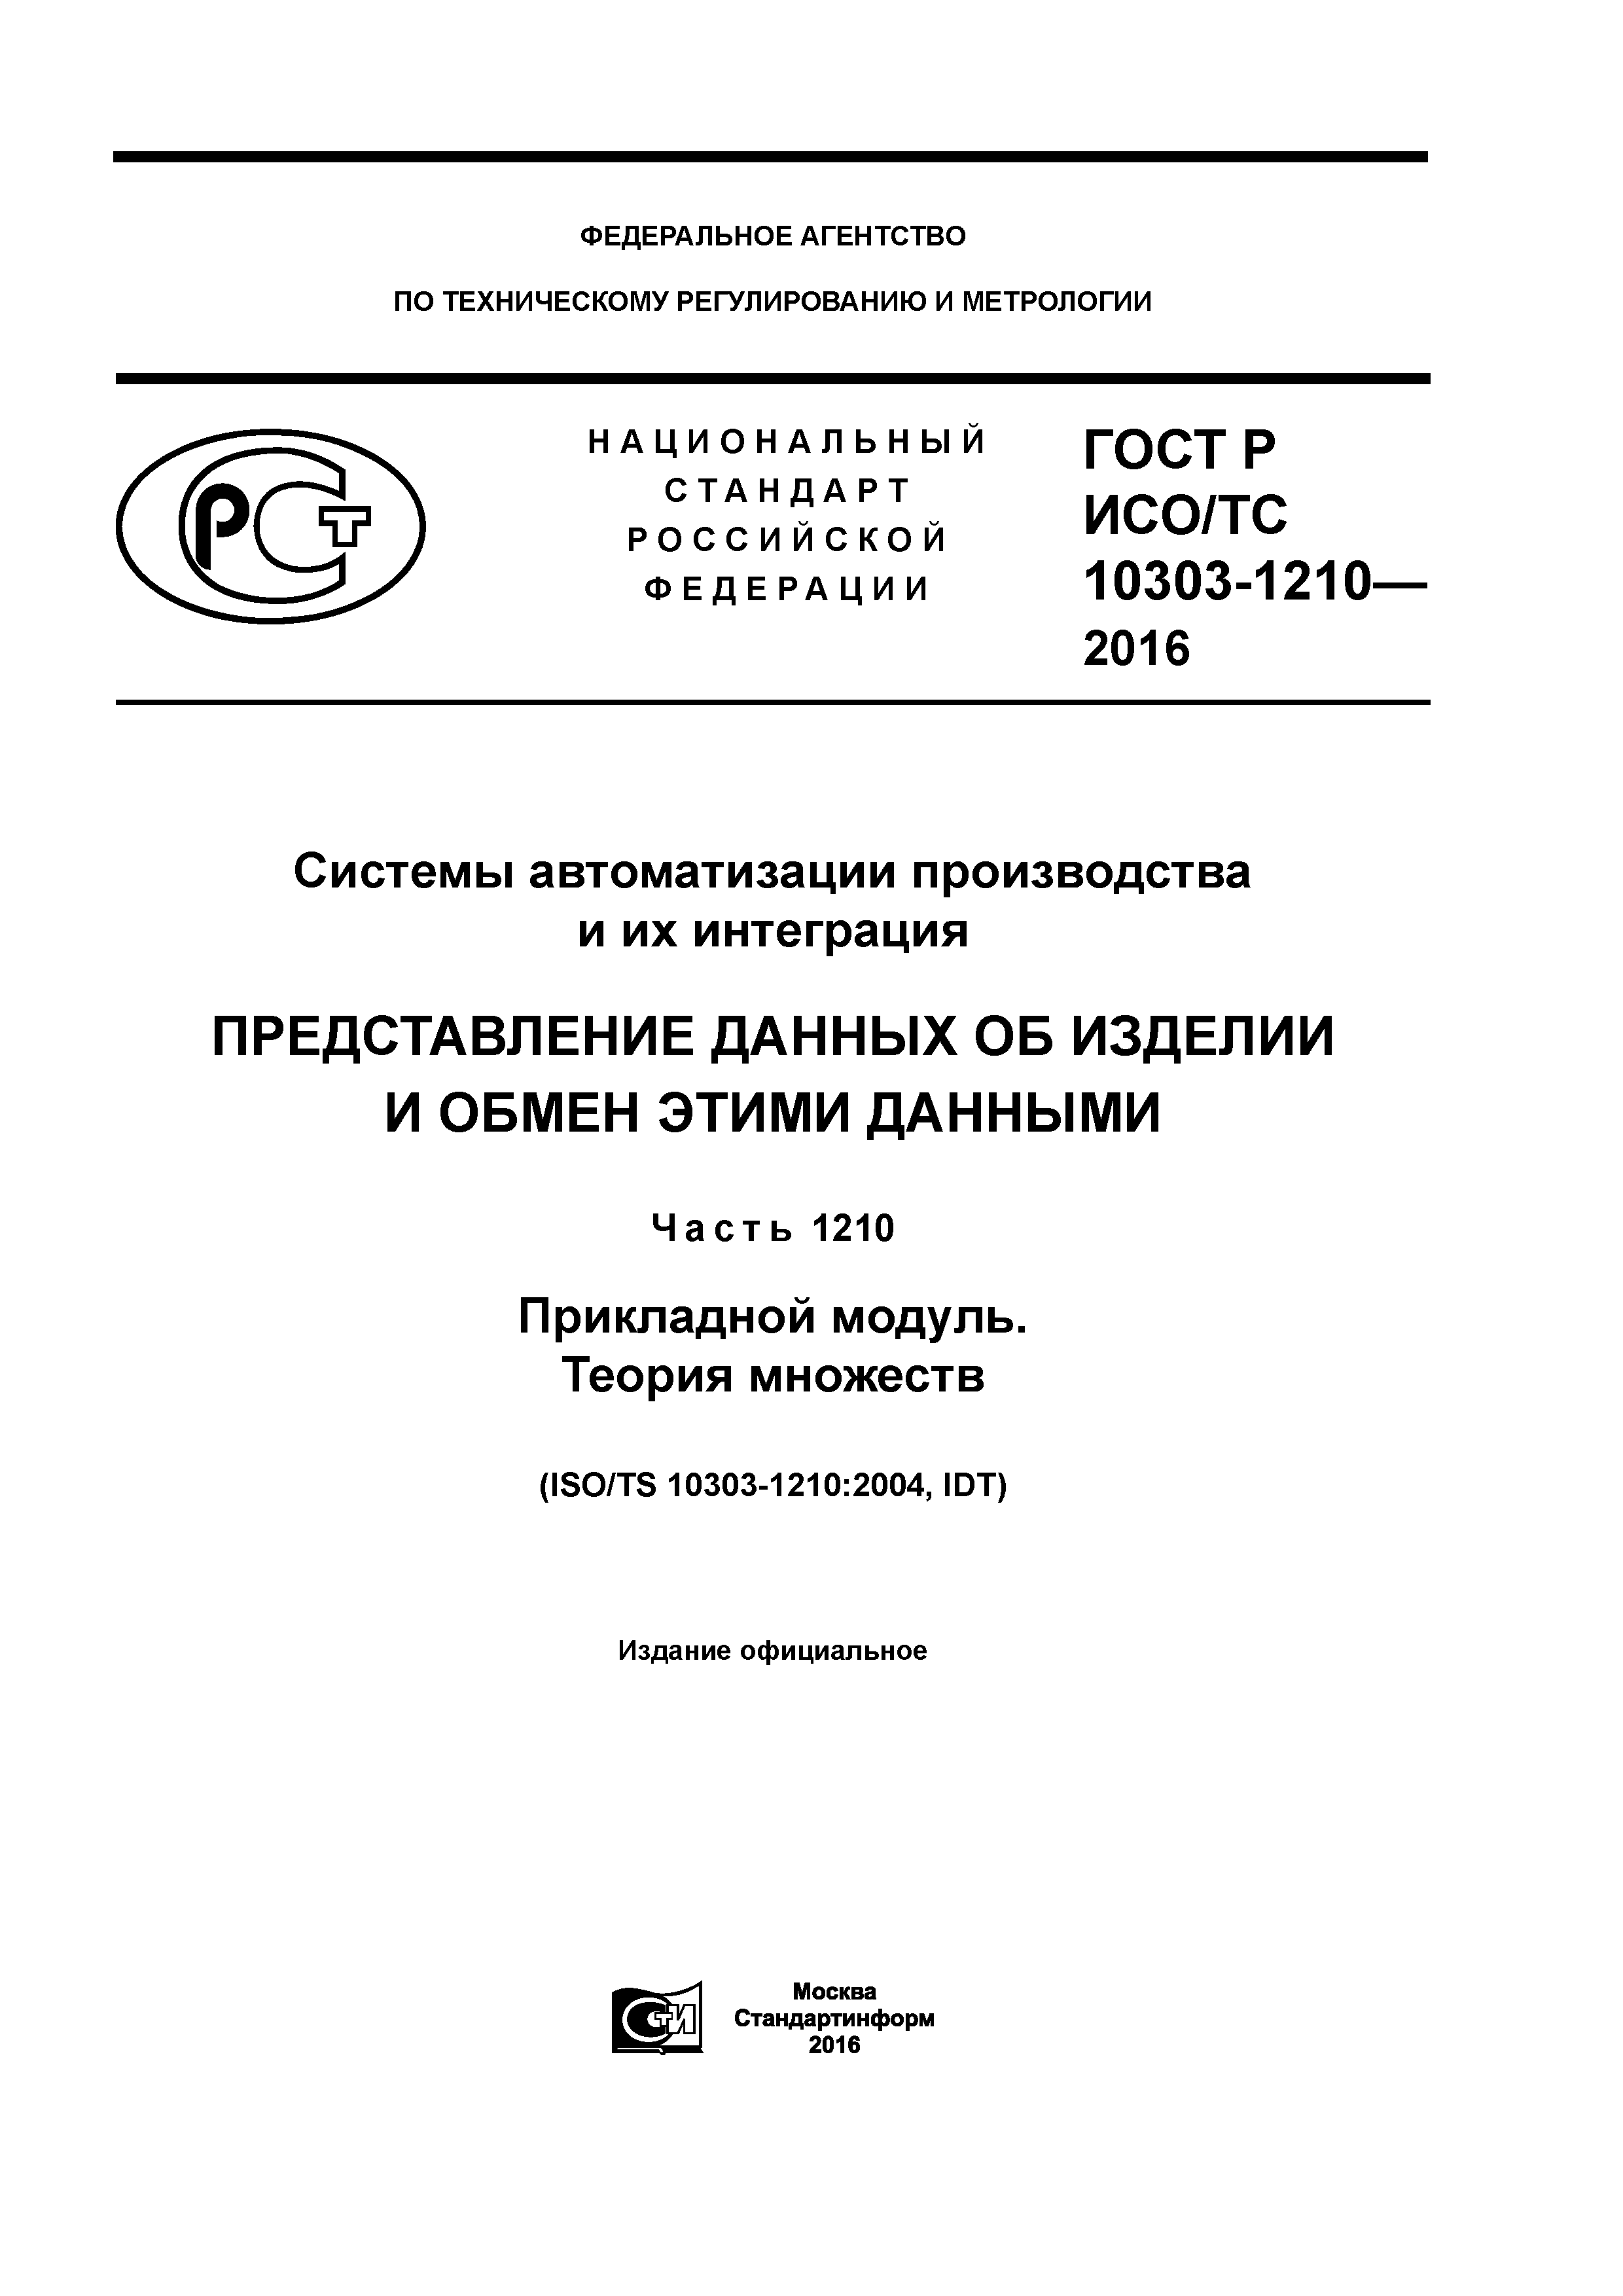 ГОСТ Р ИСО/ТС 10303-1210-2016